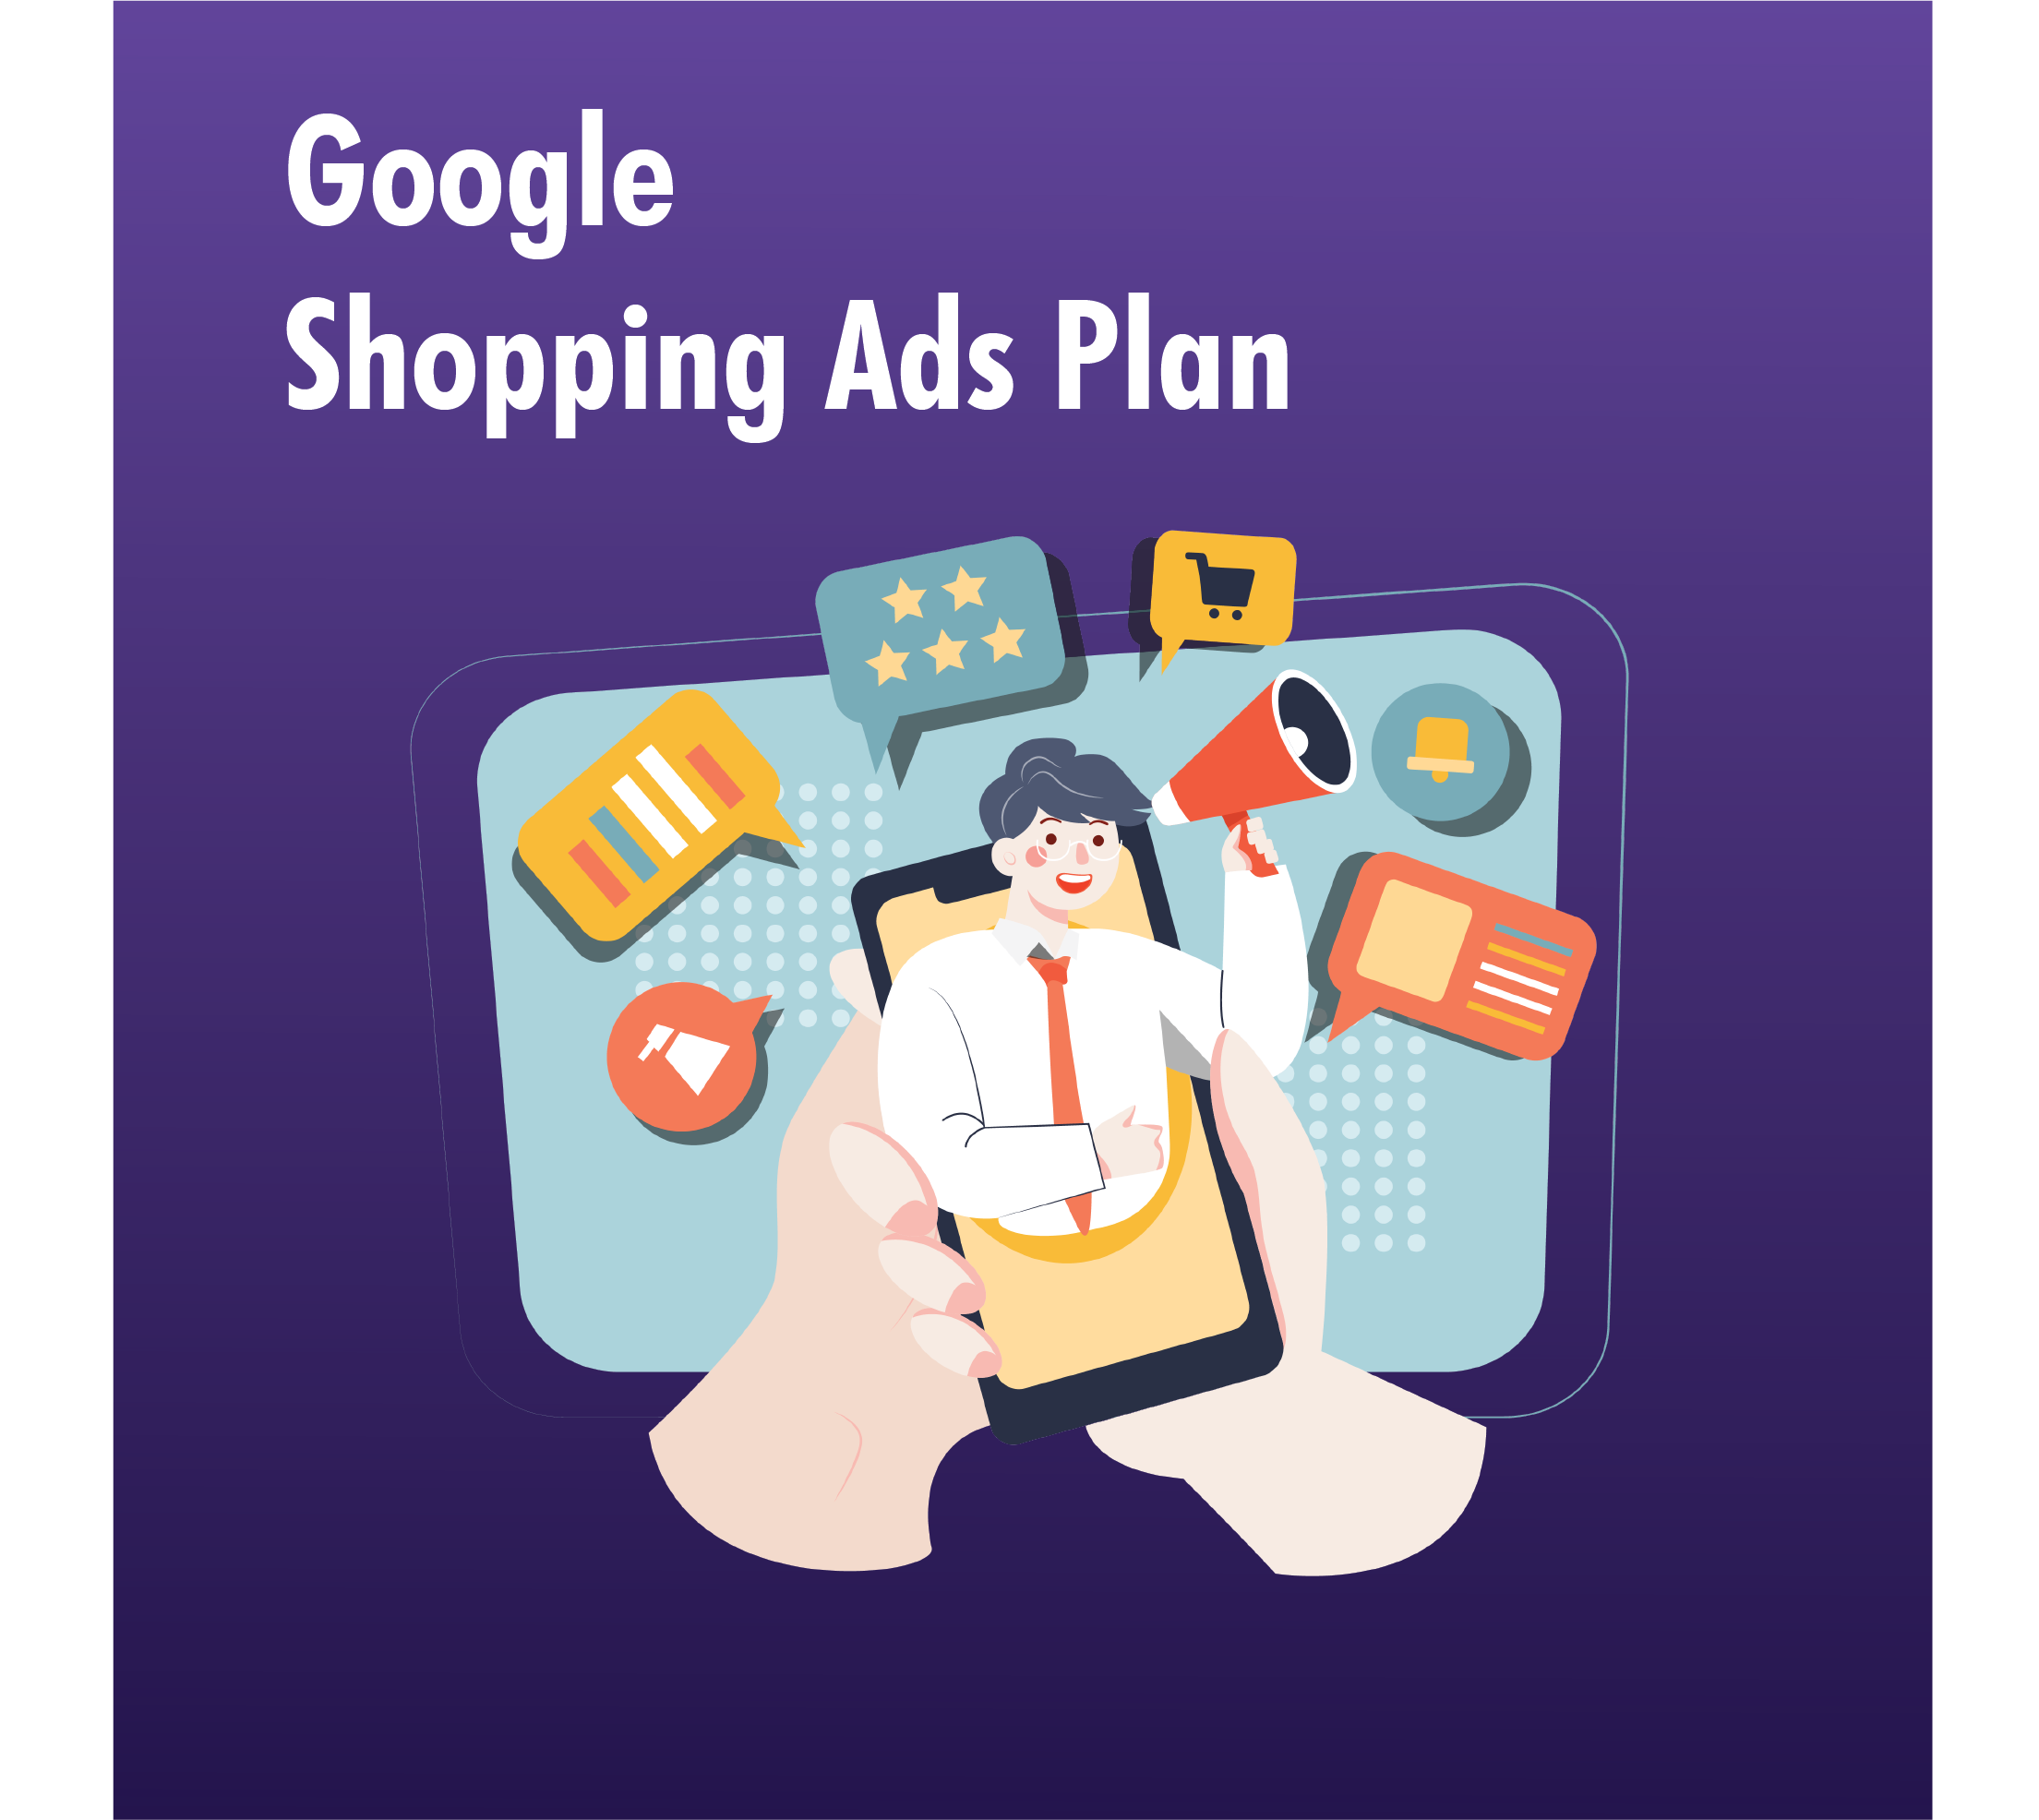 Google Shopping Ads Plan